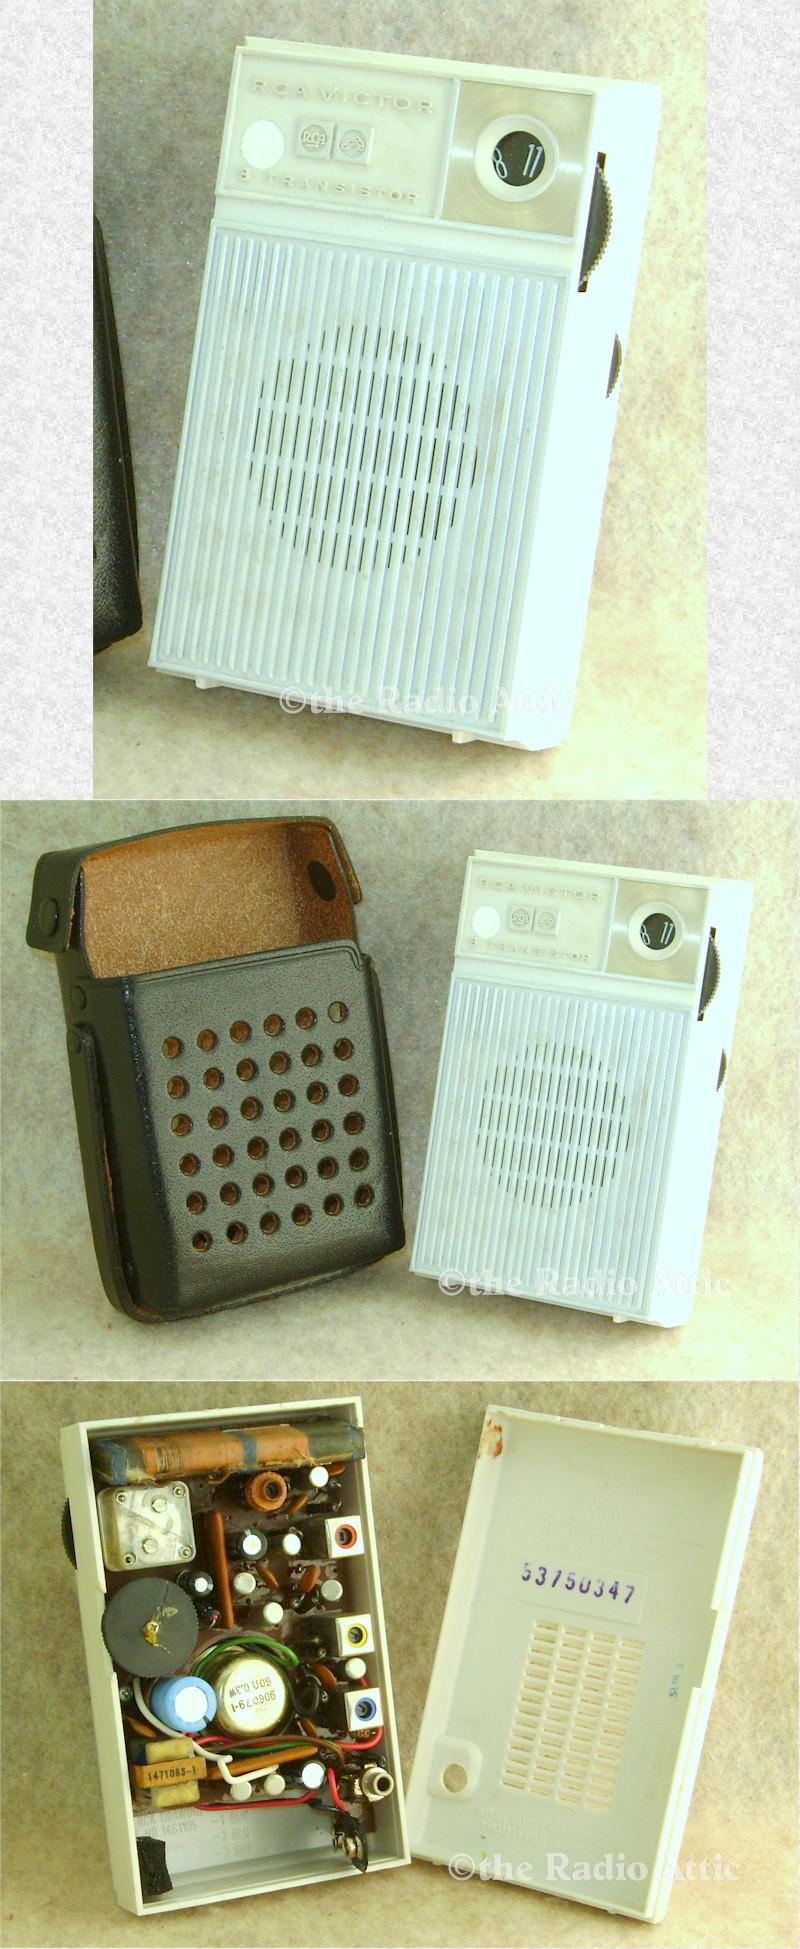 RCA AM-8 Pocket Transistor